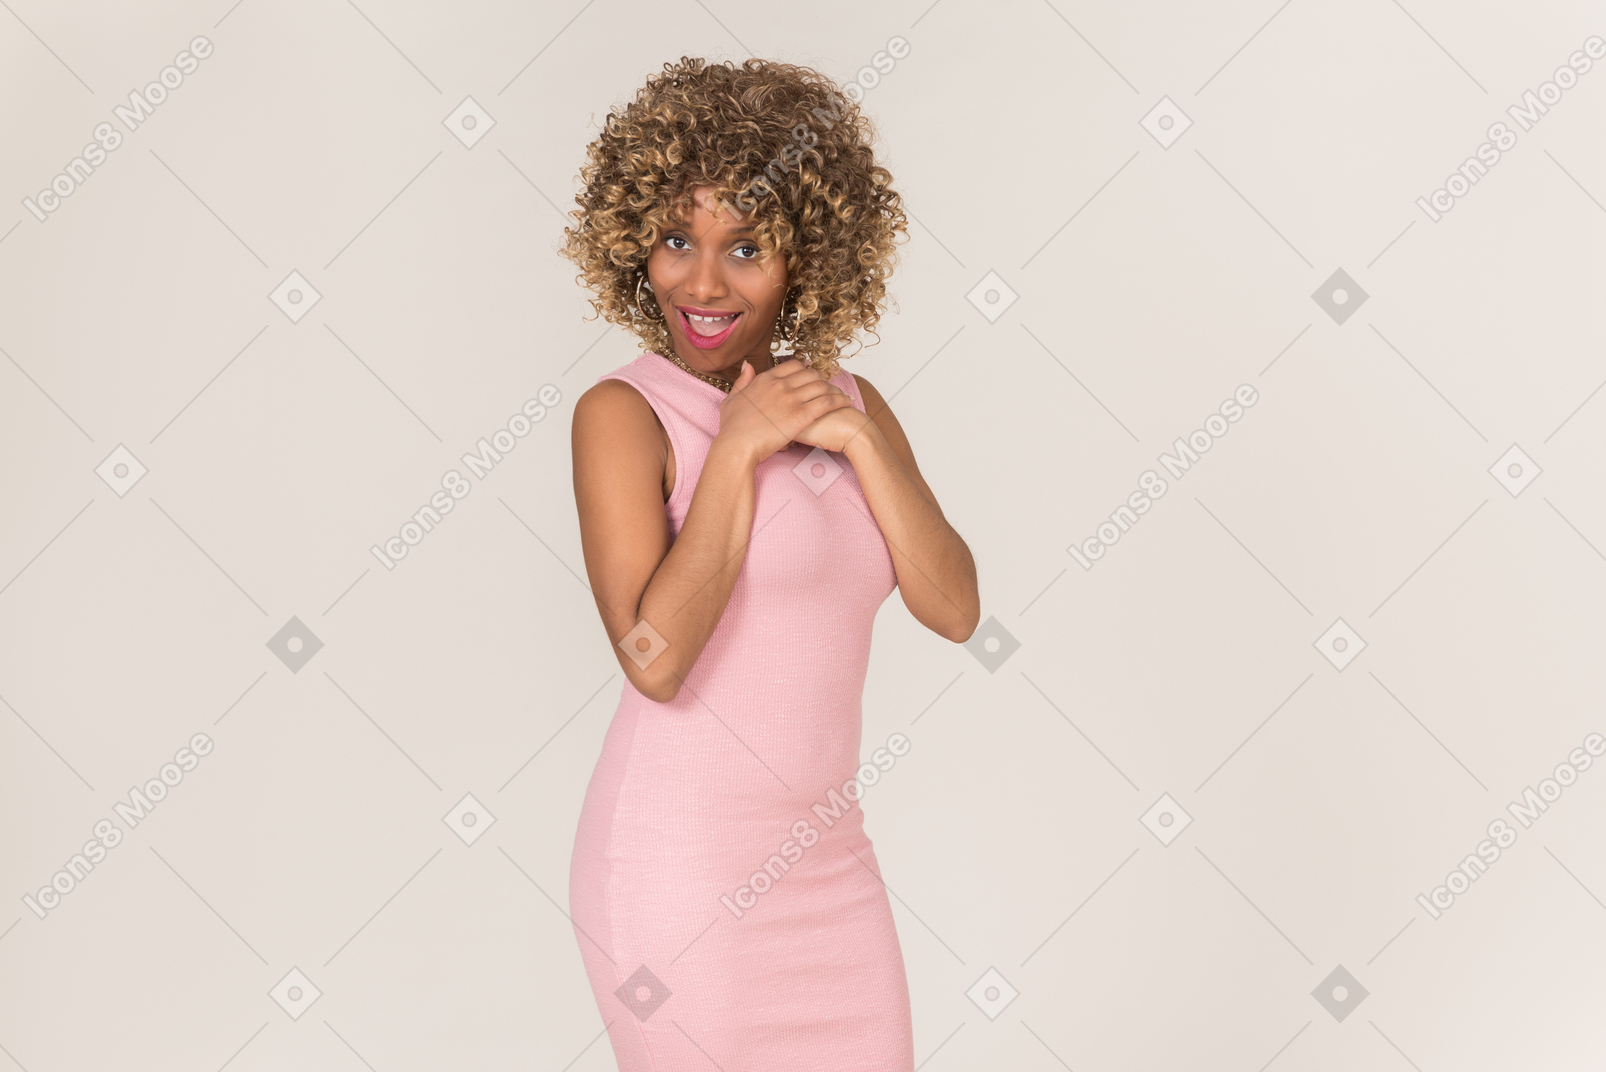 パステル ピンクのドレスを着た若い黒いふわふわした髪の女性が、無地の灰色の背景に対して一人で楽しんでいます。